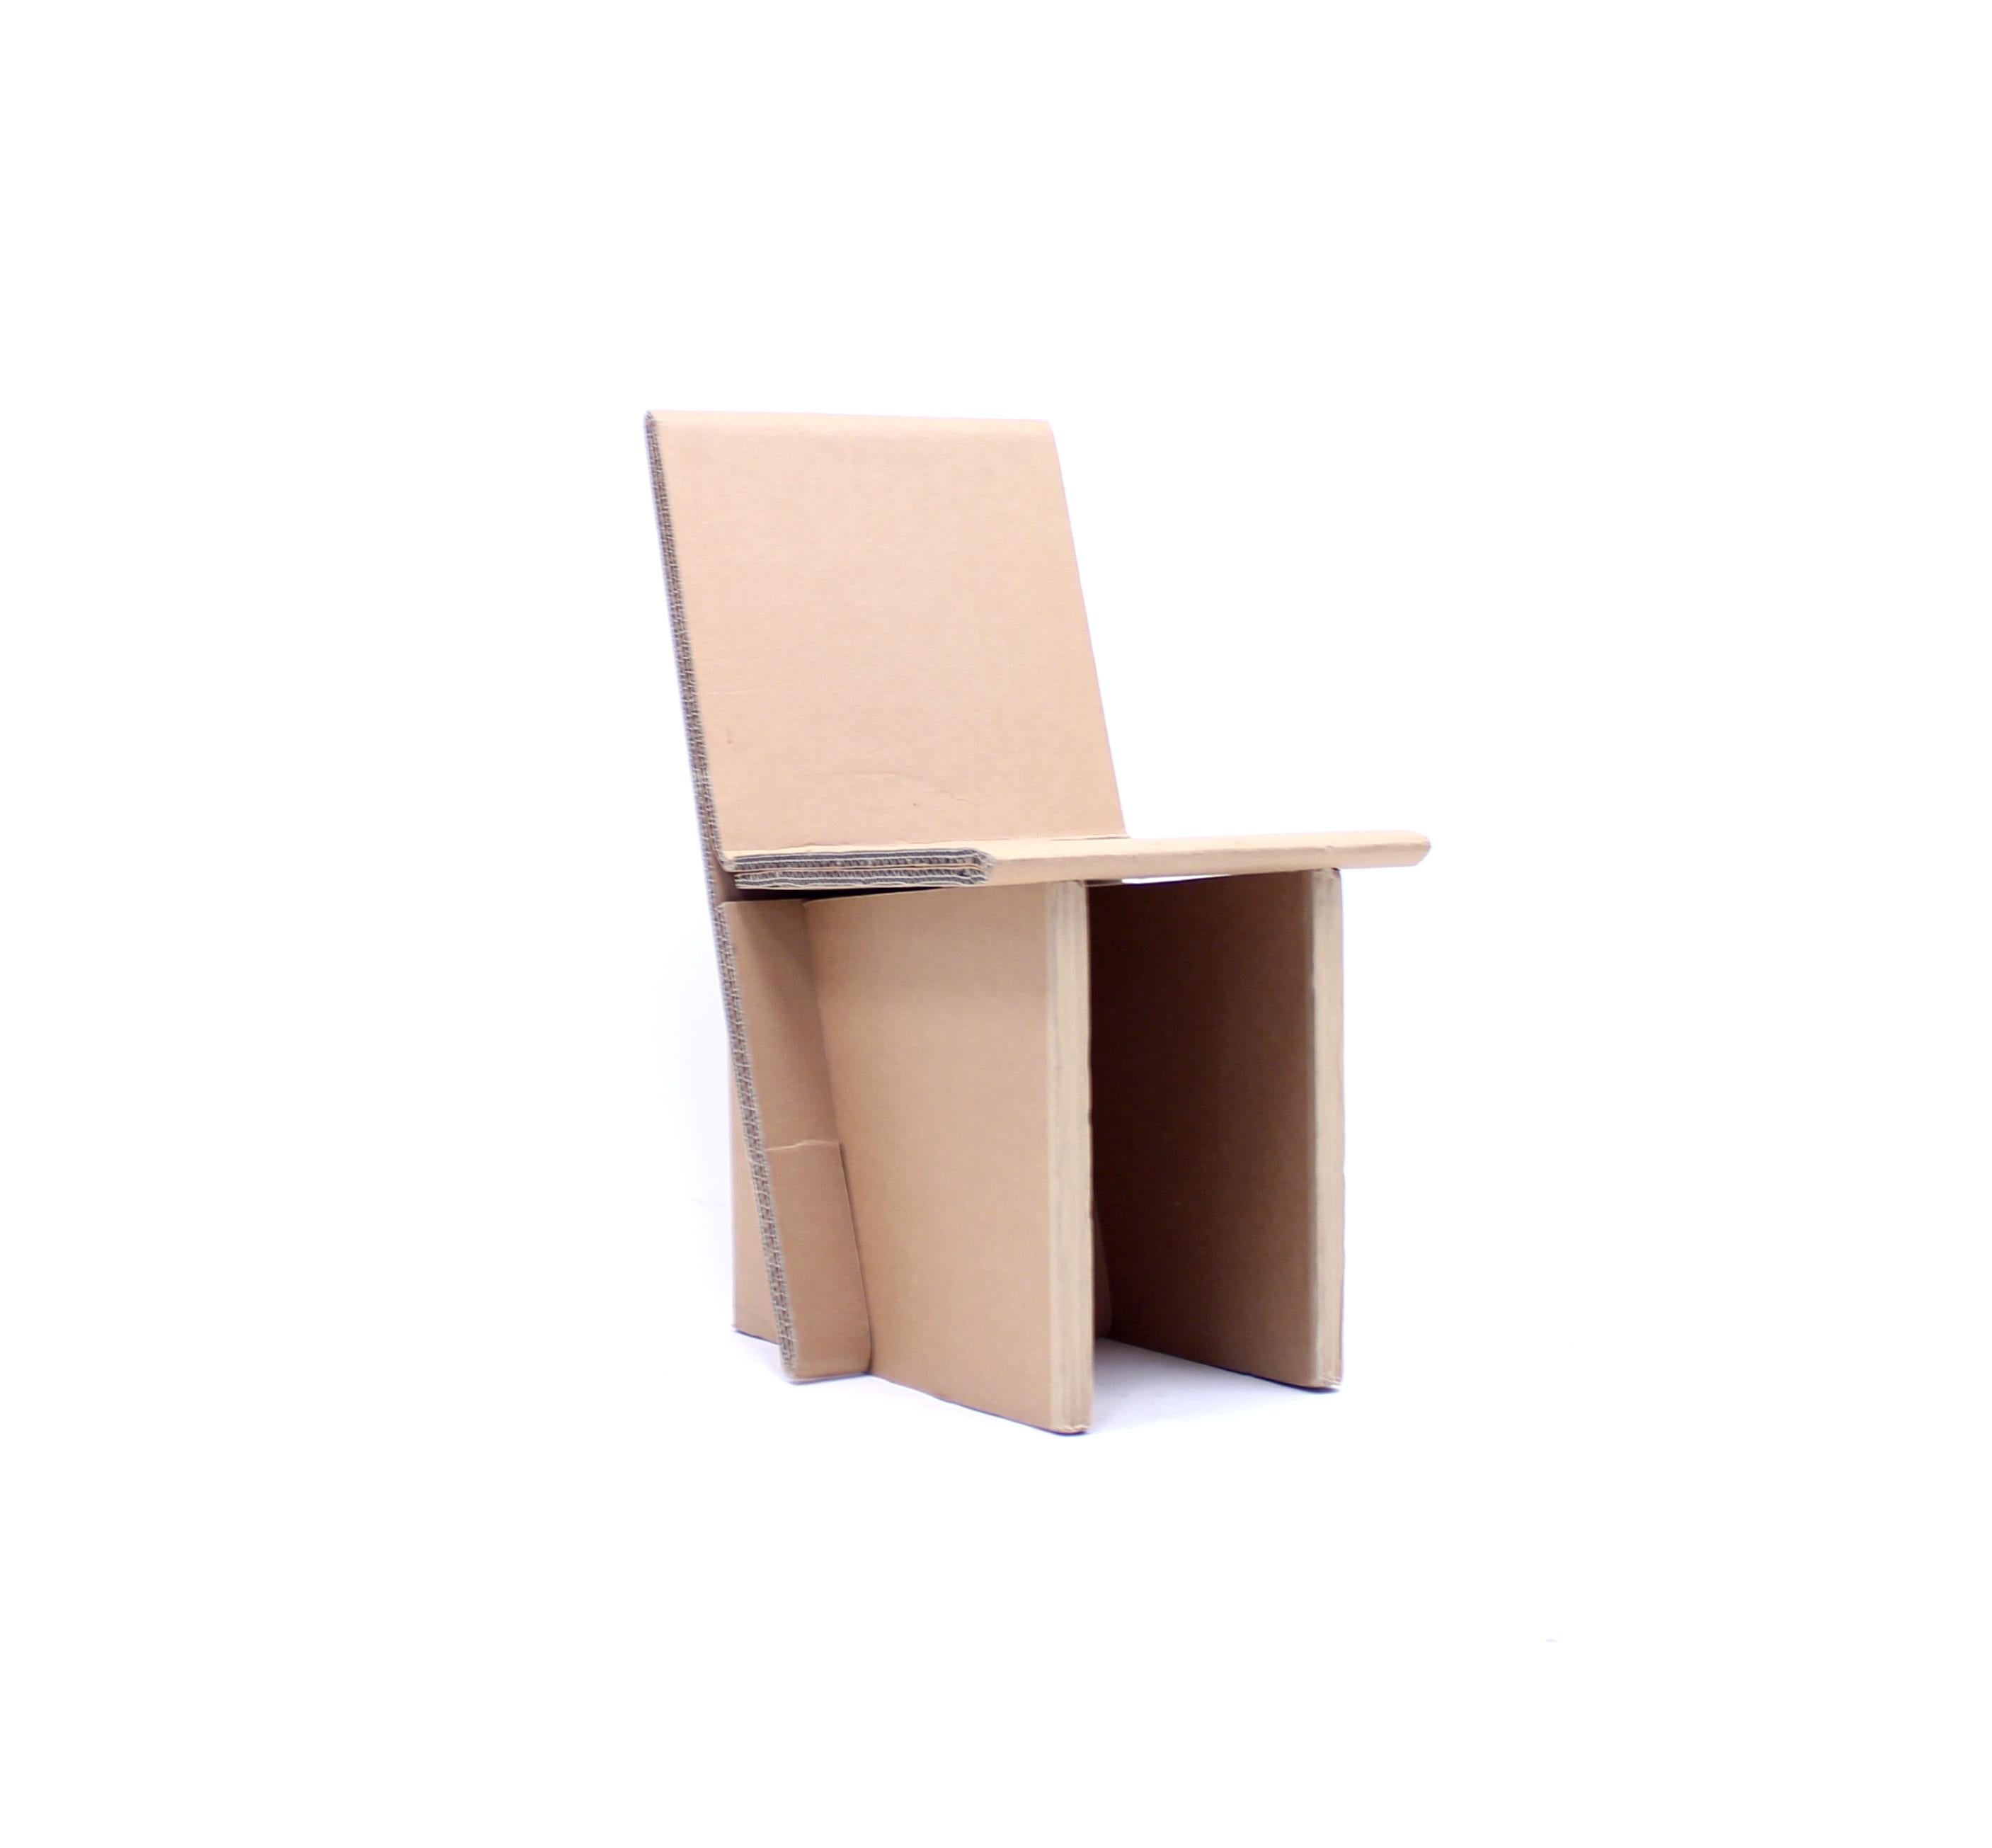 Von Sergej Gerasimenko für sein eigenes Unternehmen Returmöbler entworfener Pappstuhl in limitierter Auflage, um 2010. Limitiert auf 100 Stück. Dieses Stück ist 39/100 nummeriert und von Sergej selbst unter dem Sitz handsigniert. Der Entwurf besteht